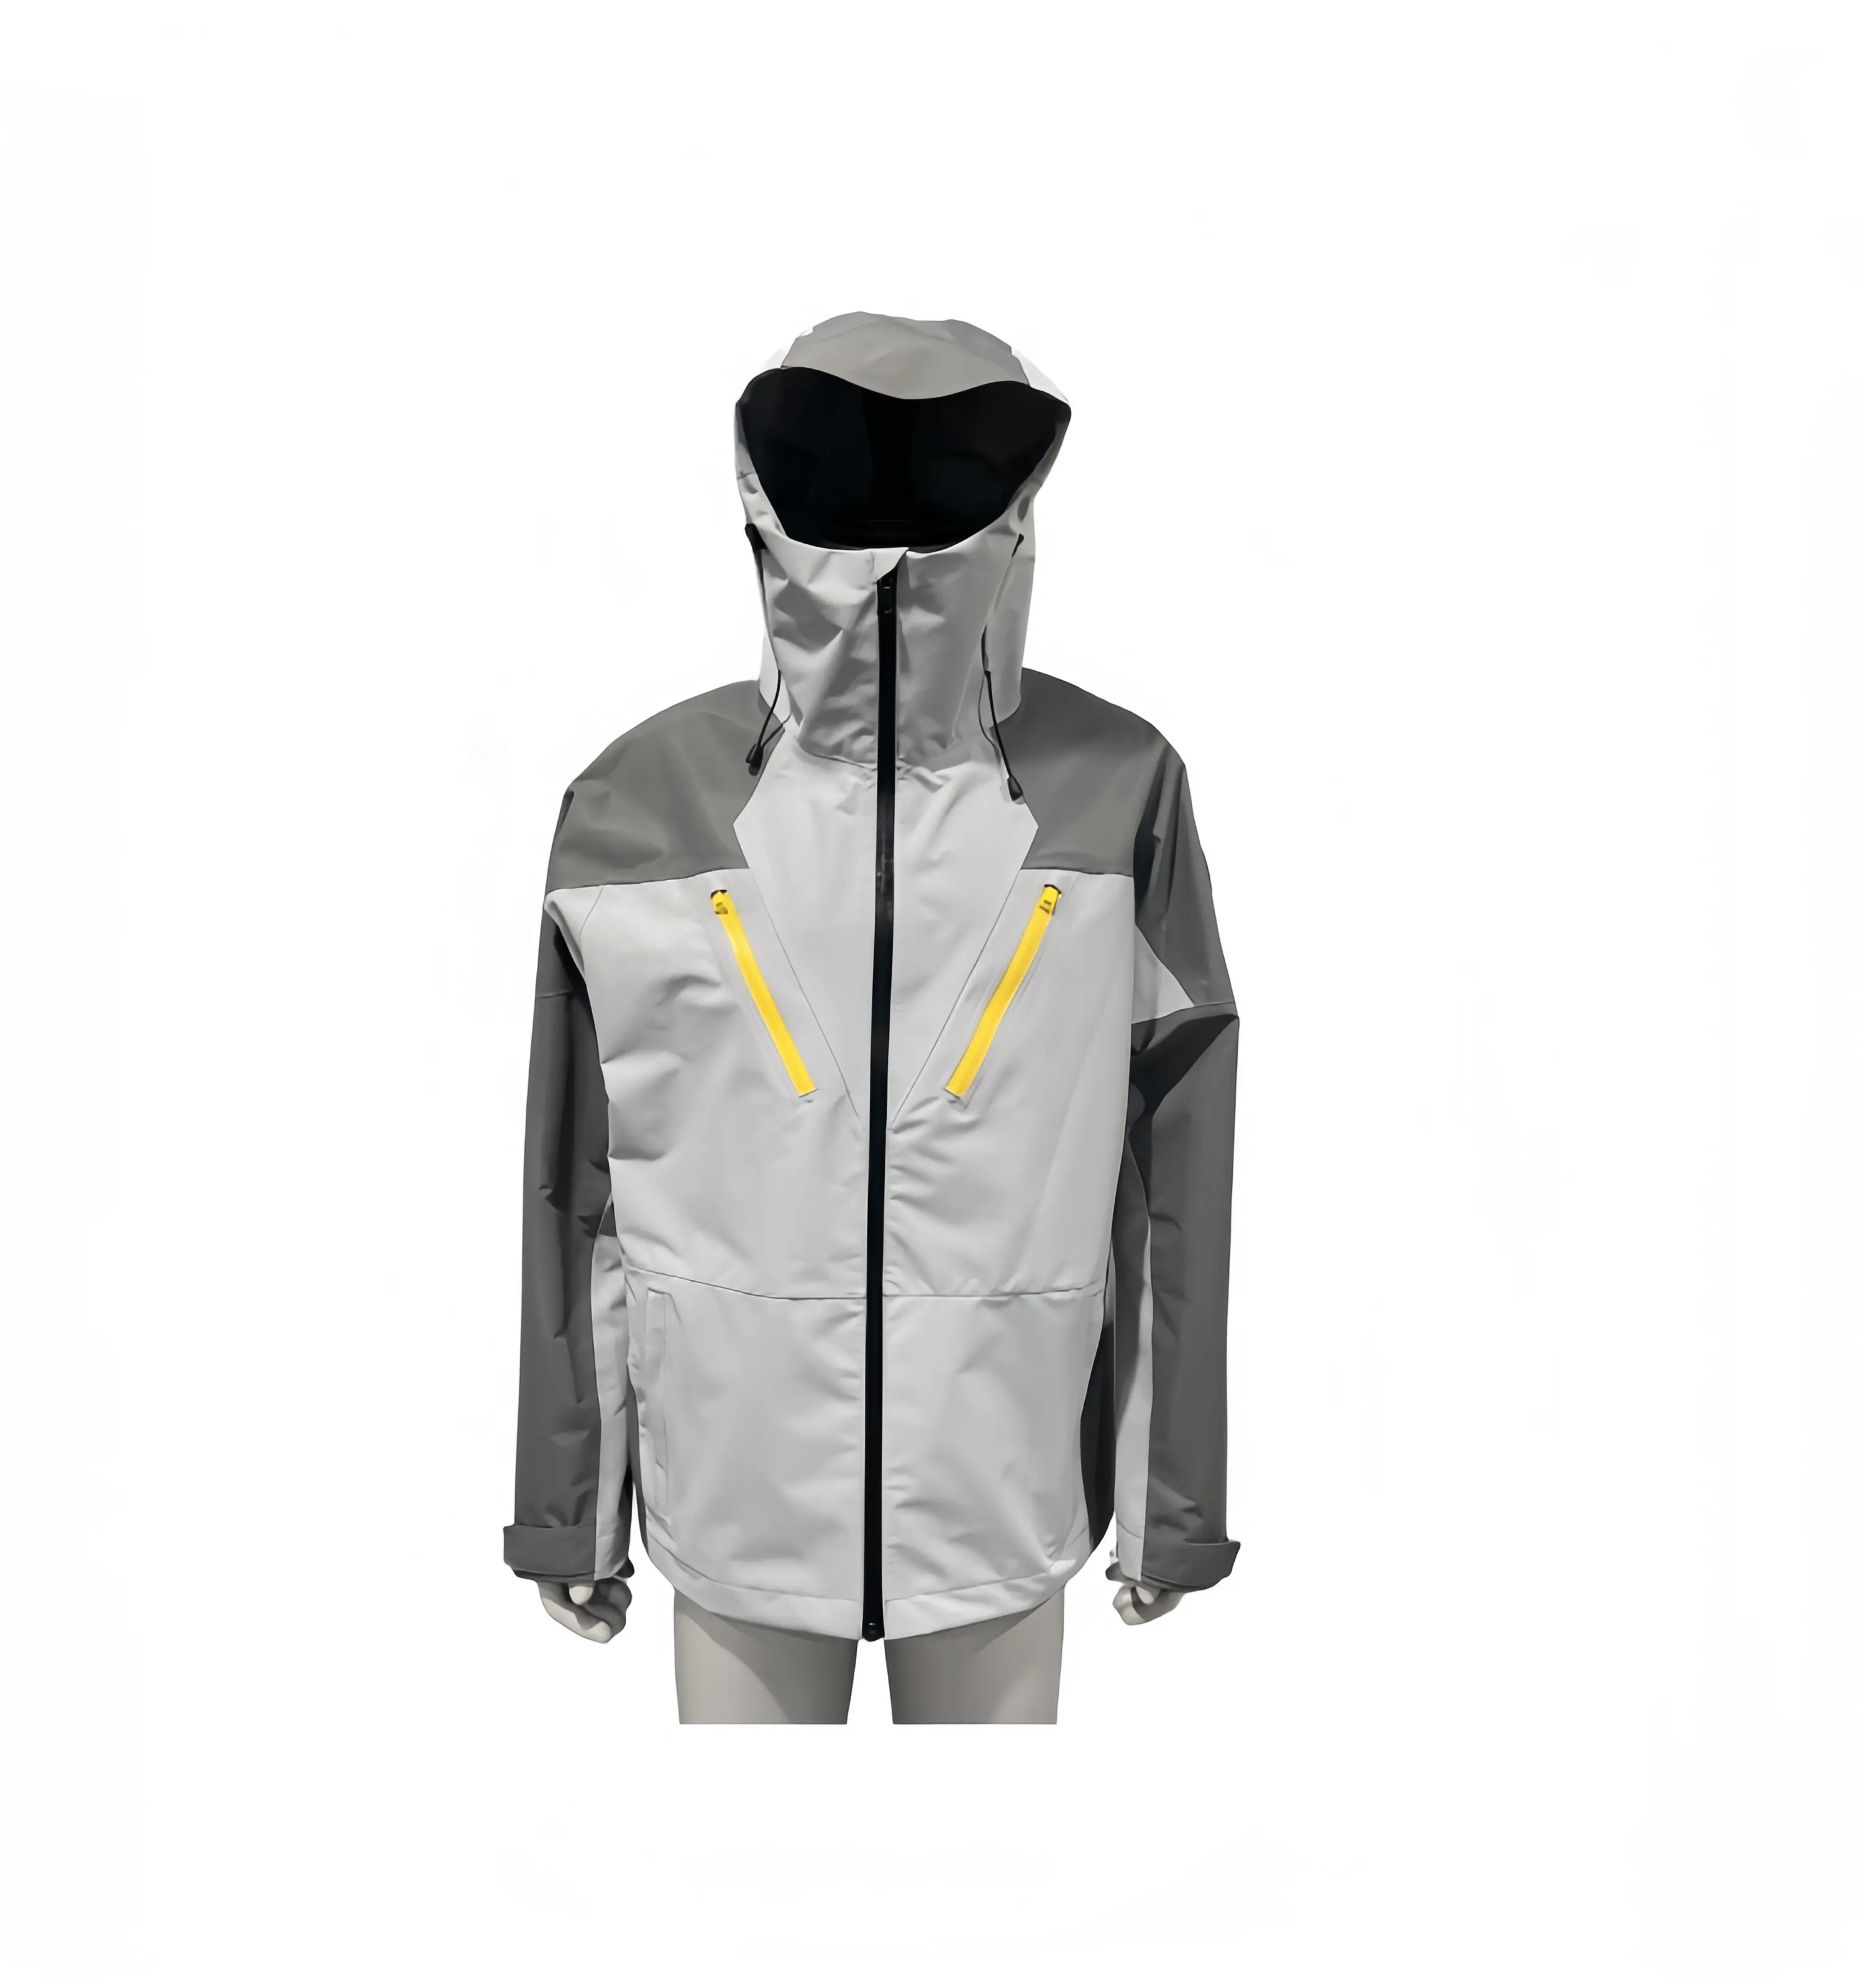 Personalizado para hombre al aire libre chaquetas impermeables ligero ajustable transpirable cortavientos chaqueta de senderismo con capucha con bolsillo impermeable